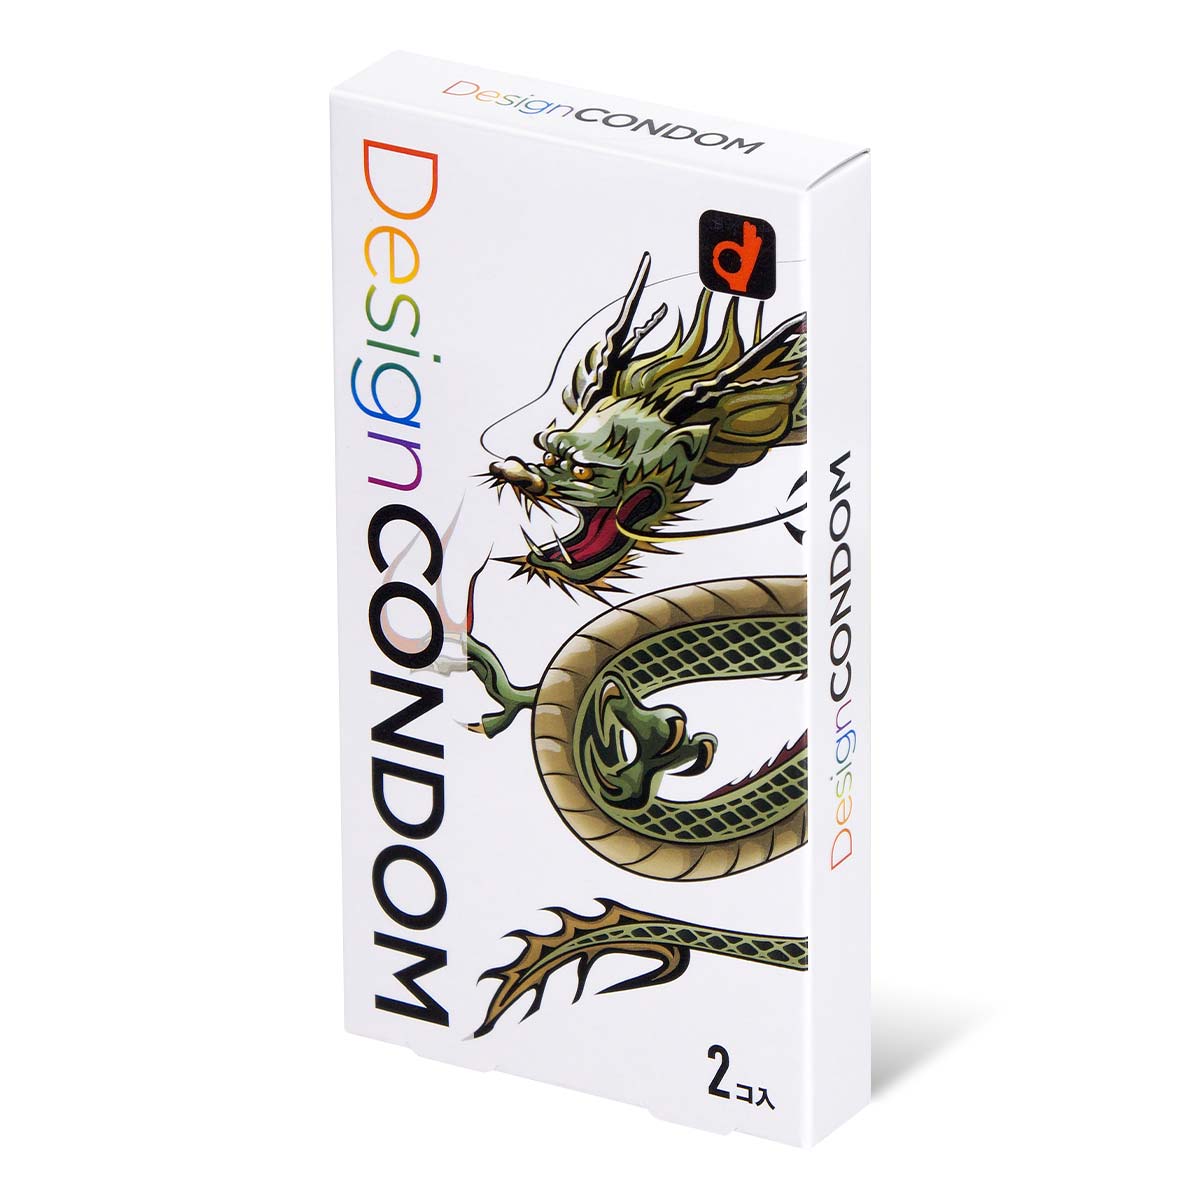 冈本 龙 Design Condom (日本版) 2 片 乳胶安全套-p_1